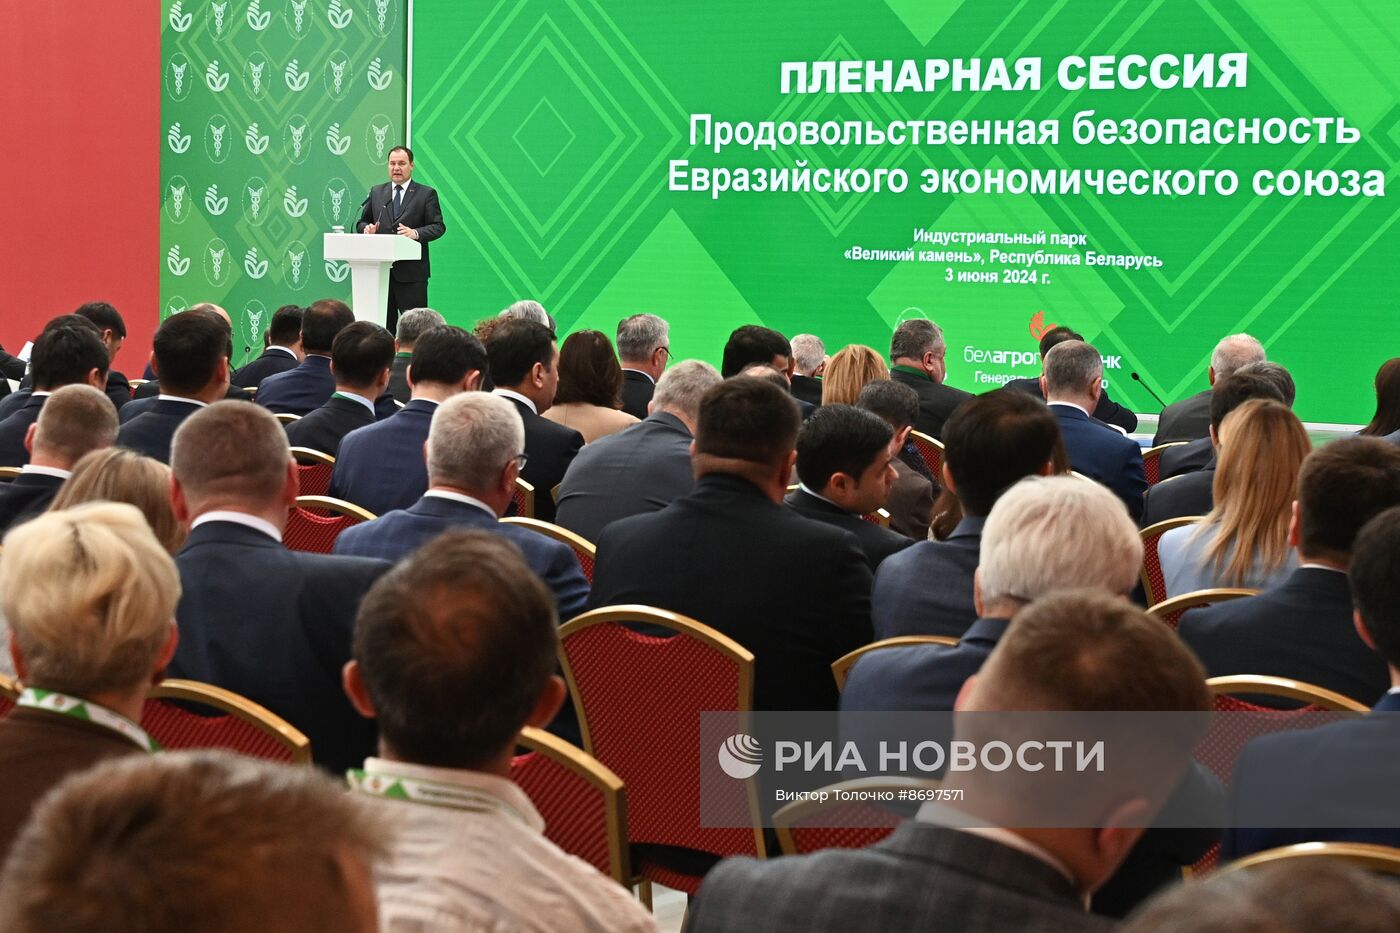 Визит премьер-министра Михаила Мишустина в Белоруссию